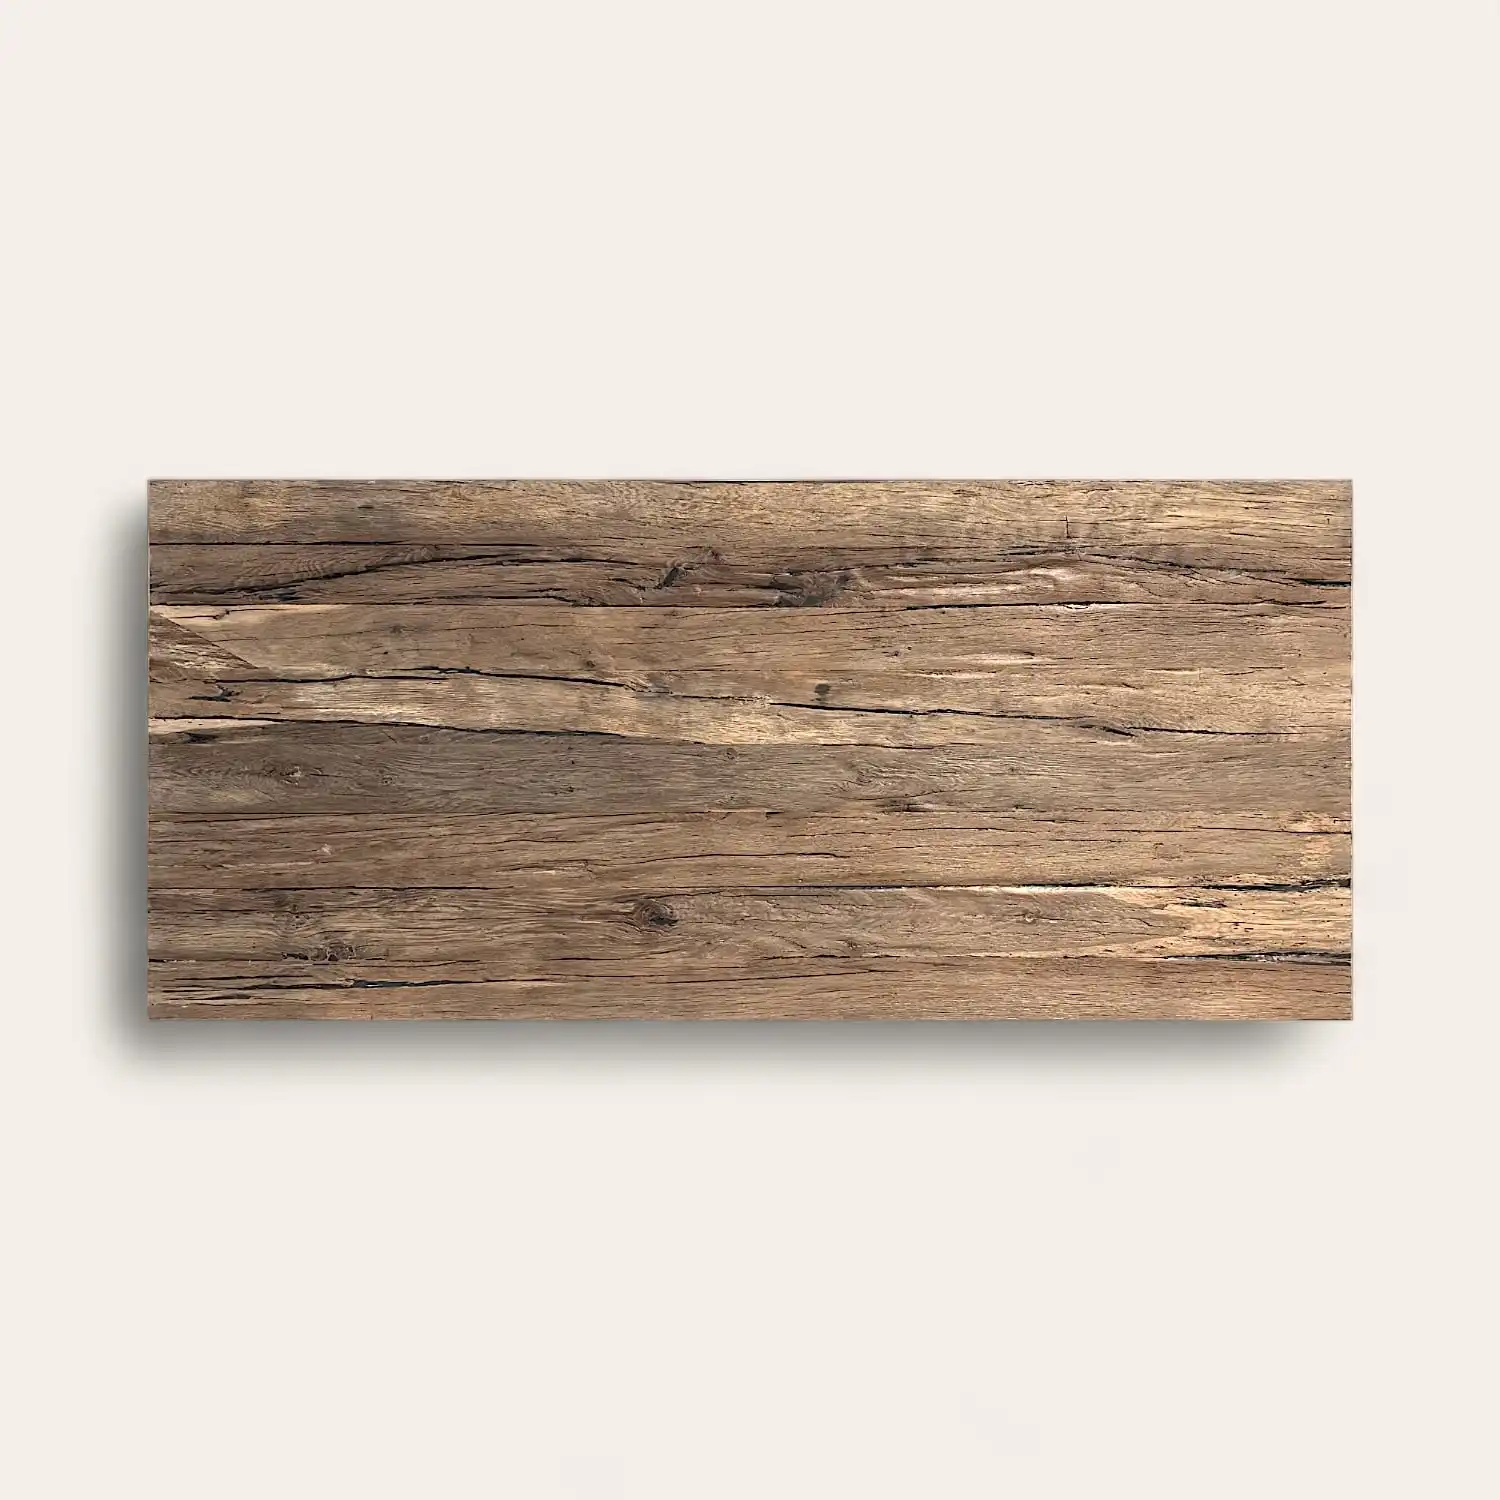  Une planche de bois texturée d'aspect patiné, présentant des motifs de grain profond et une finition rustique, montée sur un fond blanc dans le cadre d'un panneau 5 plis. 